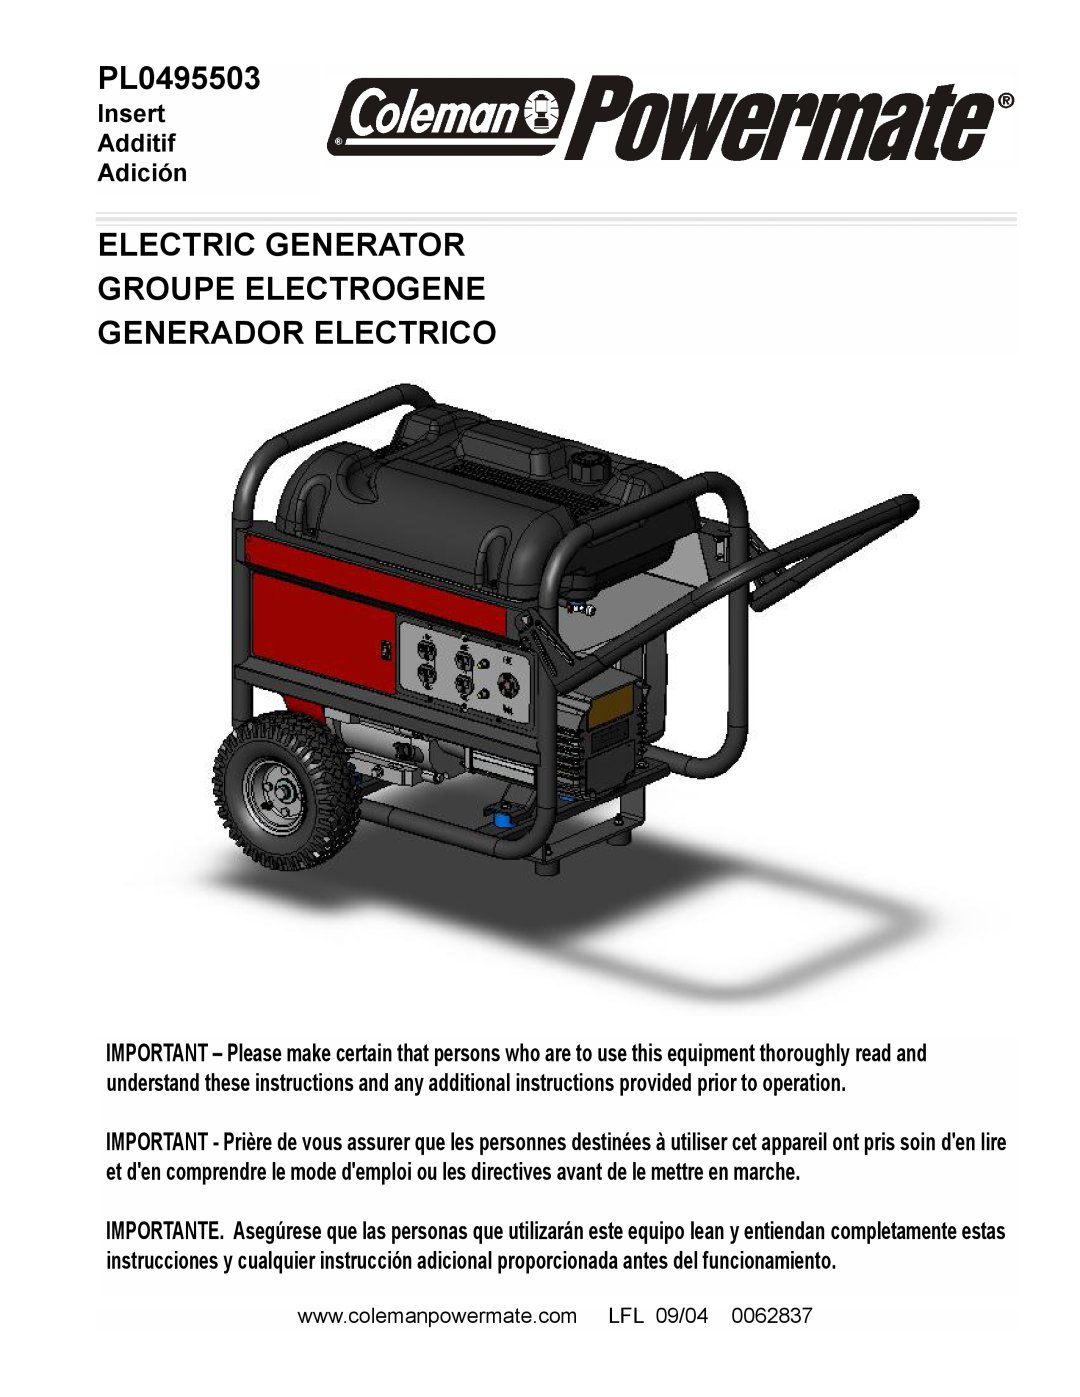 Powermate PL0495503 manual Electric Generator Groupe Electrogene, Generador Electrico, Insert Additif Adición 